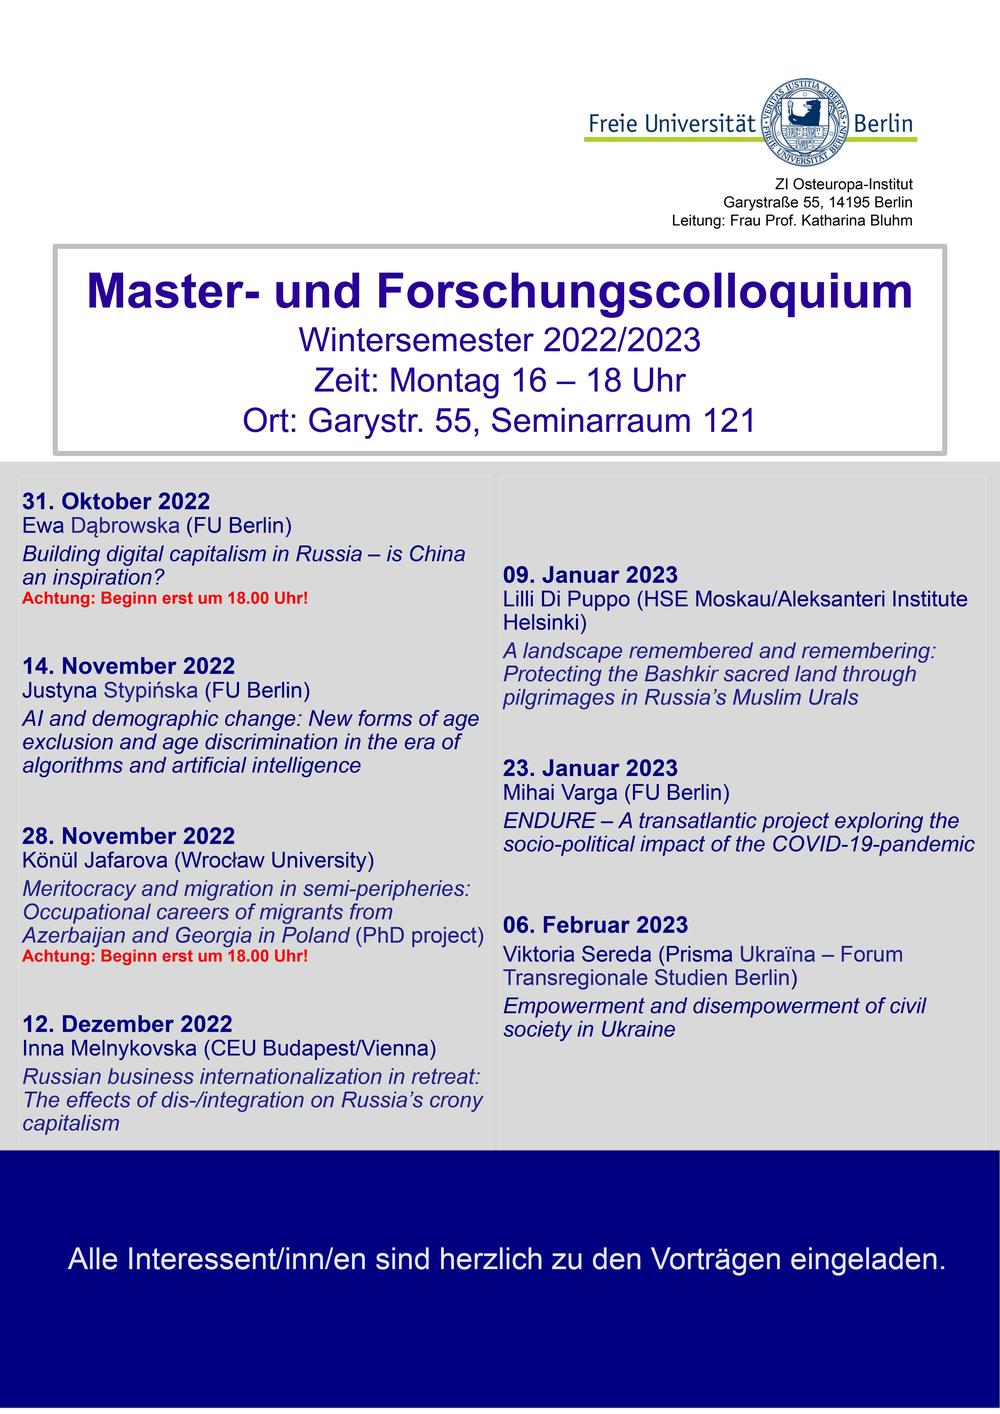 Master- und Forschungscolloquium WiSe 2022/2023